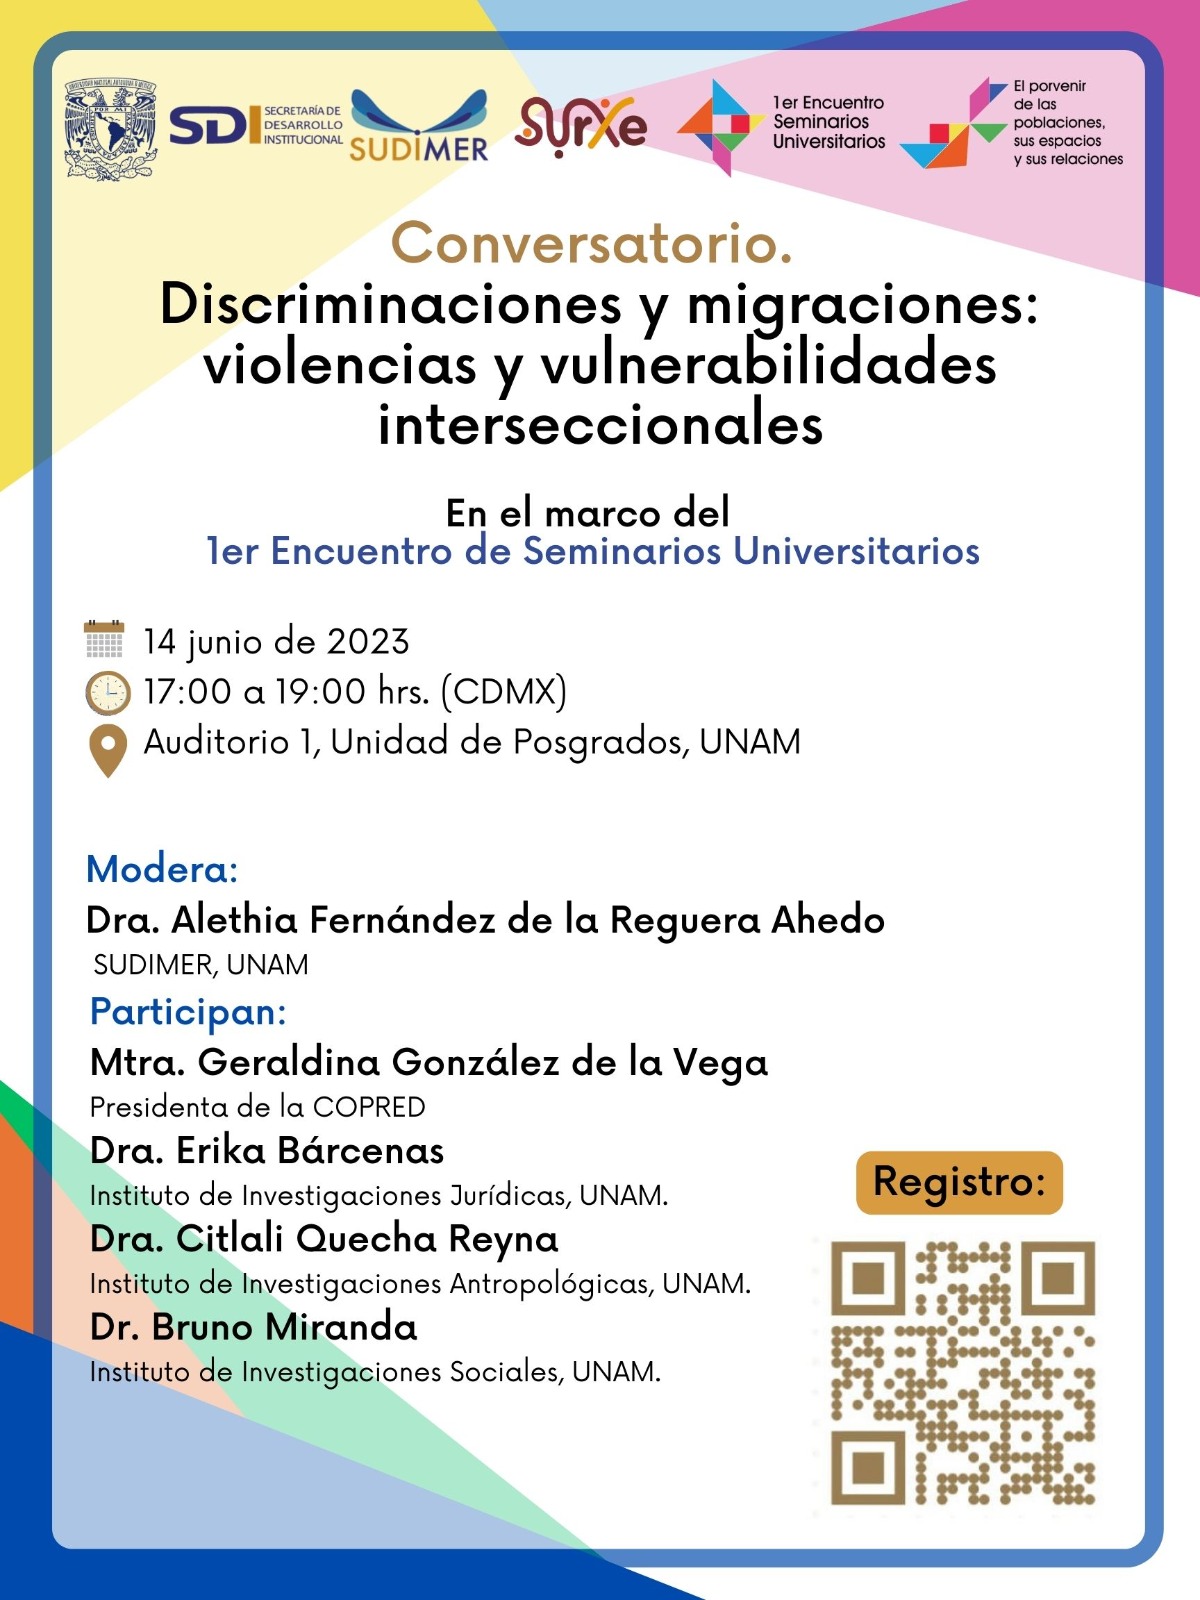 Conversatorio ''Discriminaciones y migraciones: violencias y vulnerabilidades interseccionales''